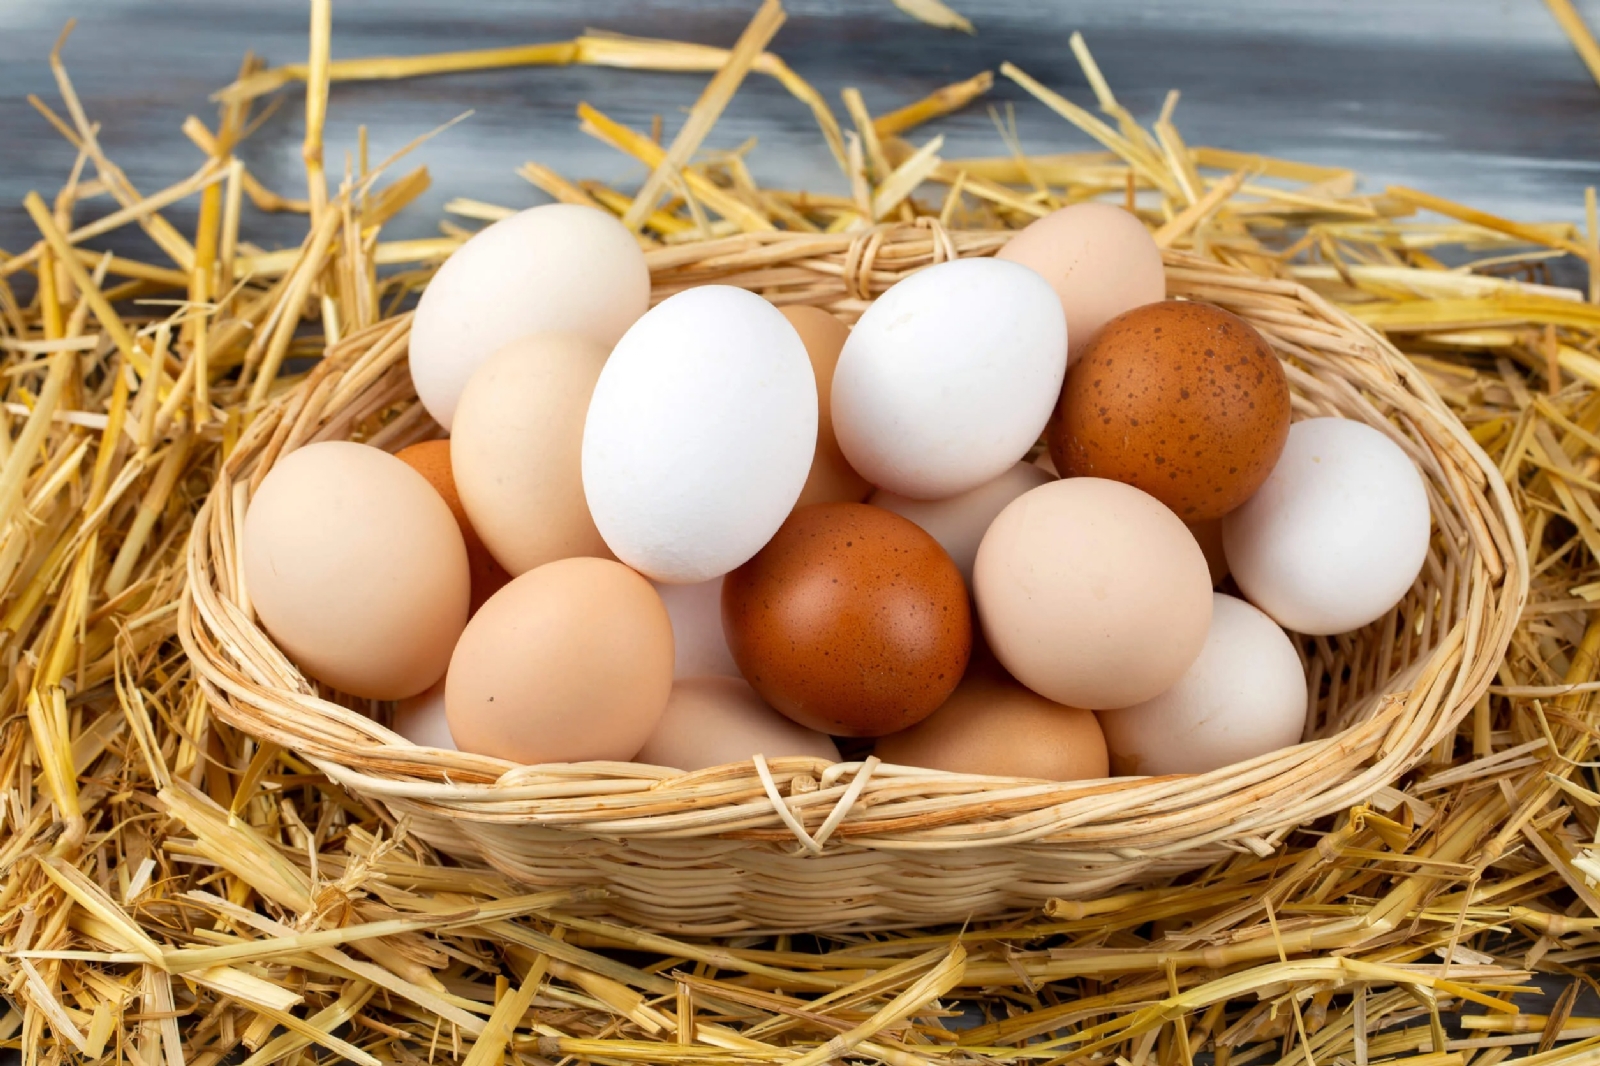 Los huevos deben conservarse frescos, más durante el verano, pues el calor provocaría que su contenido se descomponga